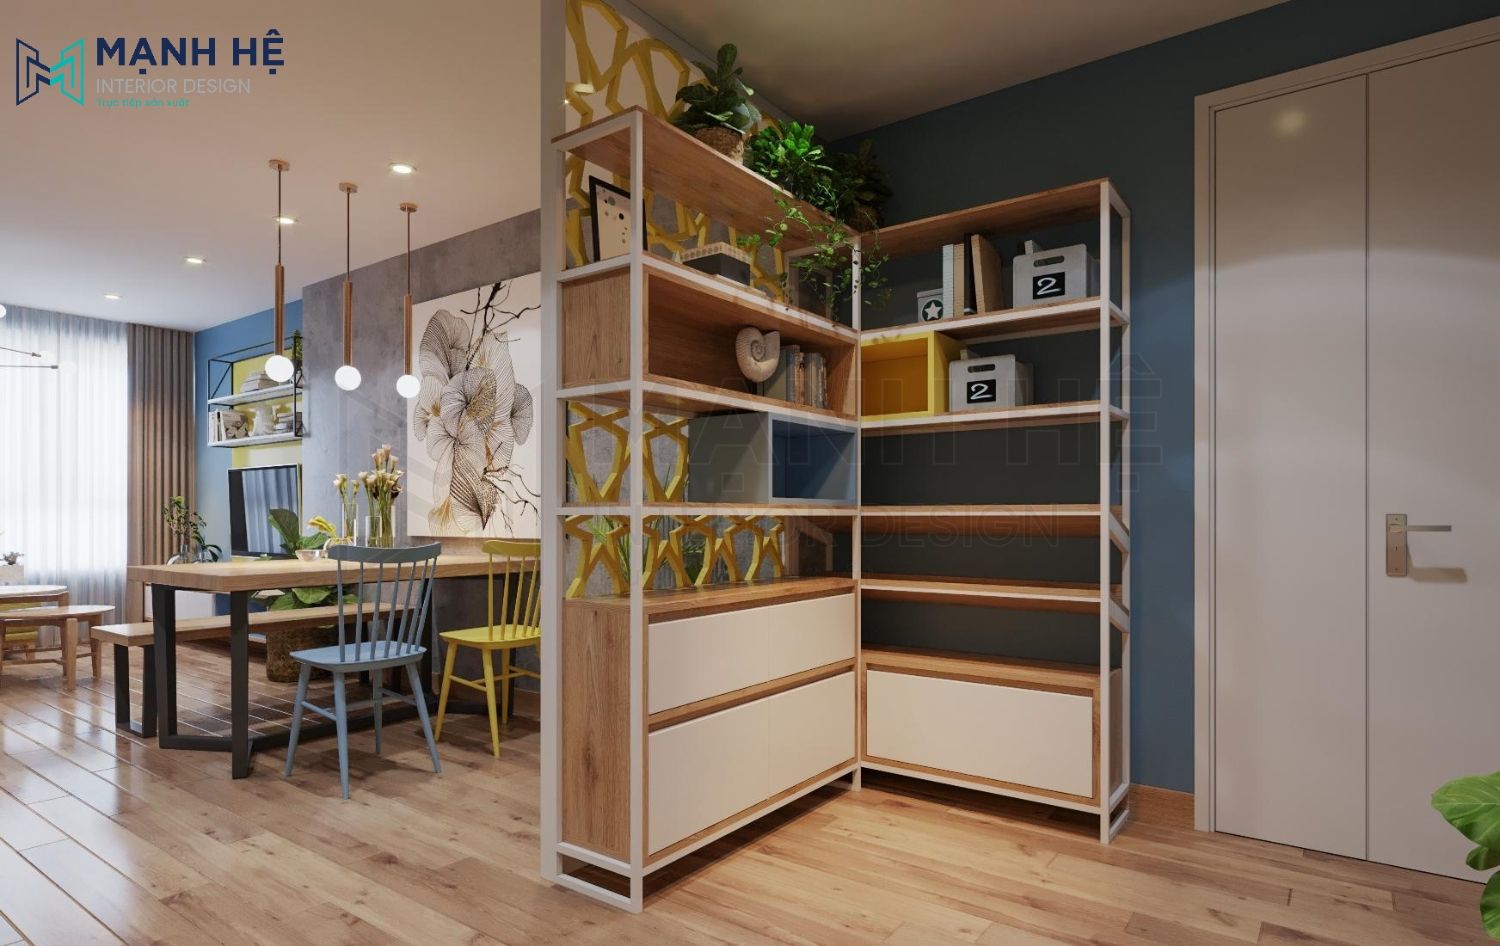 Sử dụng vách ngăn kệ  trang trí để tạo không gian riêng giữa phòng bếp với phòng khách và phòng ăn